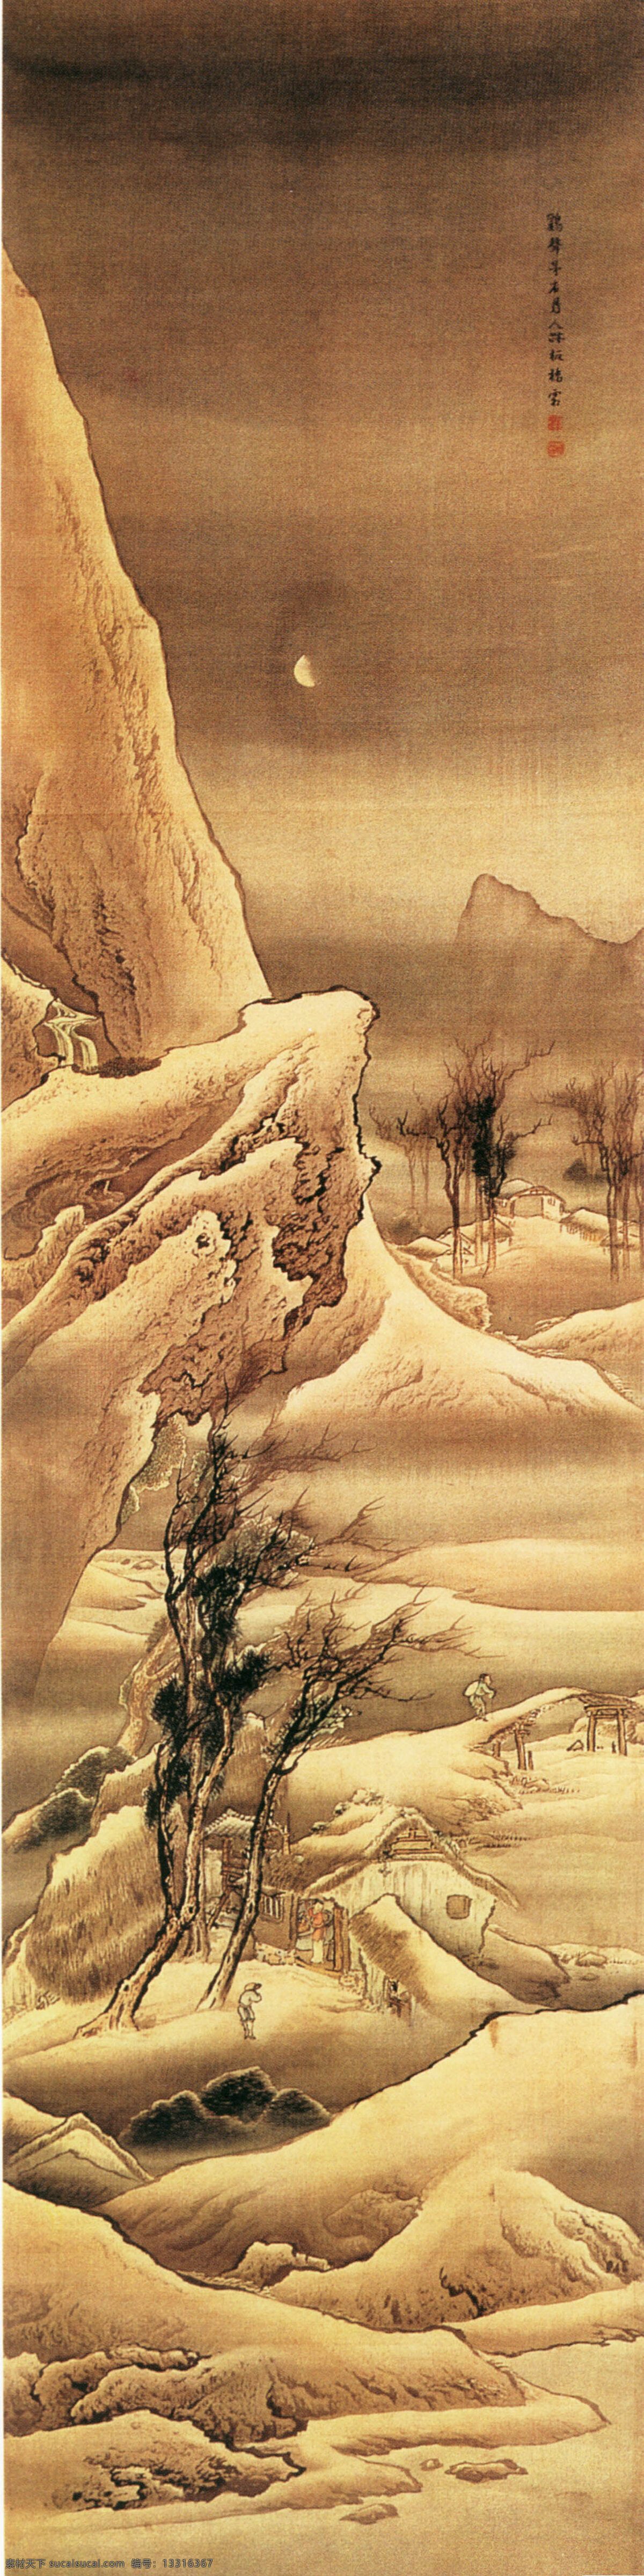 怪石免费下载 国画 水墨 中国画 怪石 文化艺术